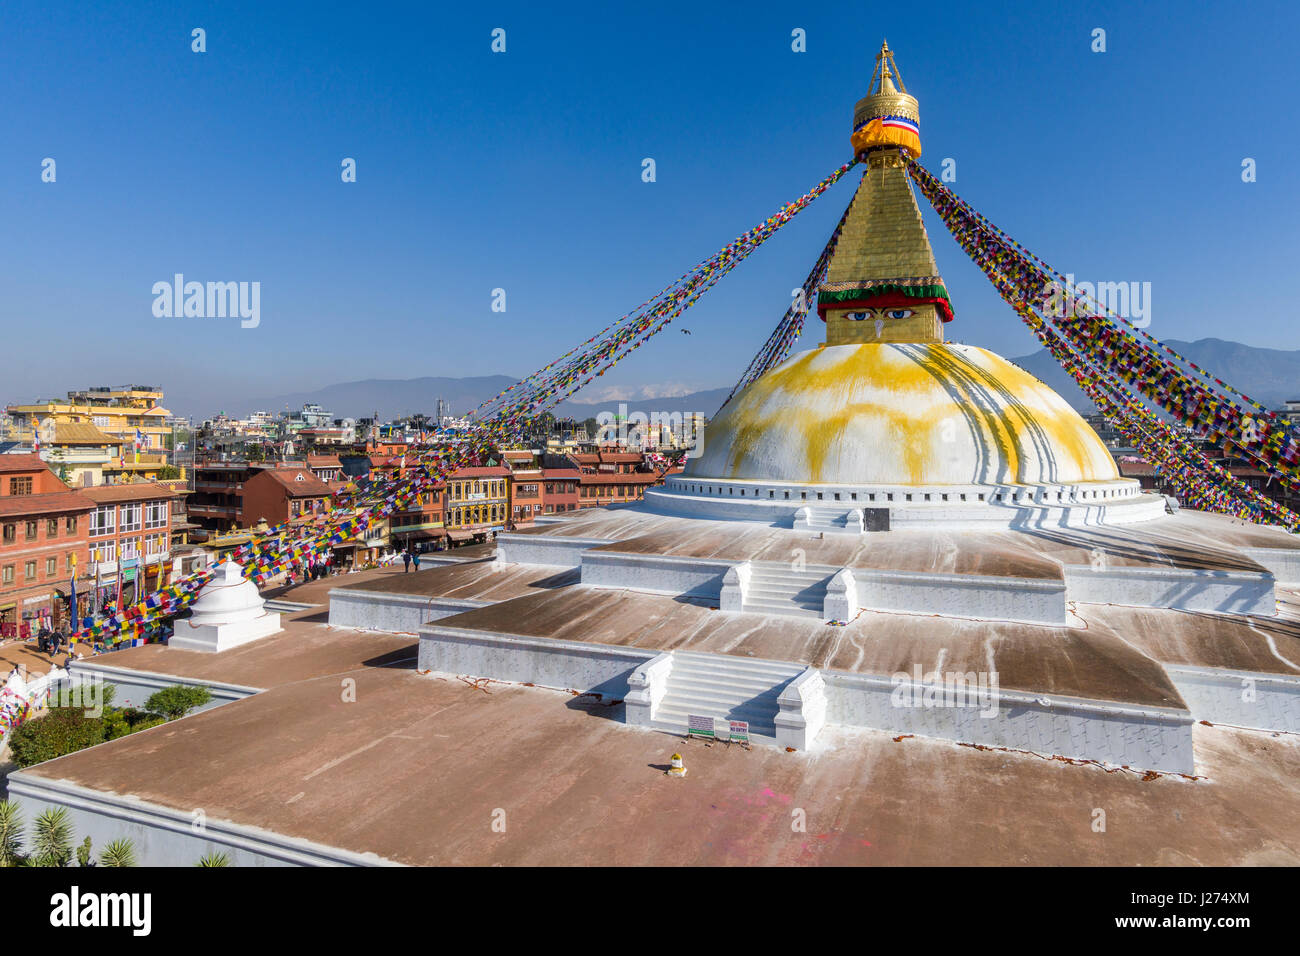 El bouda stupa es el centro de espiritualidad budista en la ciudad, el edificio blanco está decorado por coloridos tibetean prayerflags Foto de stock